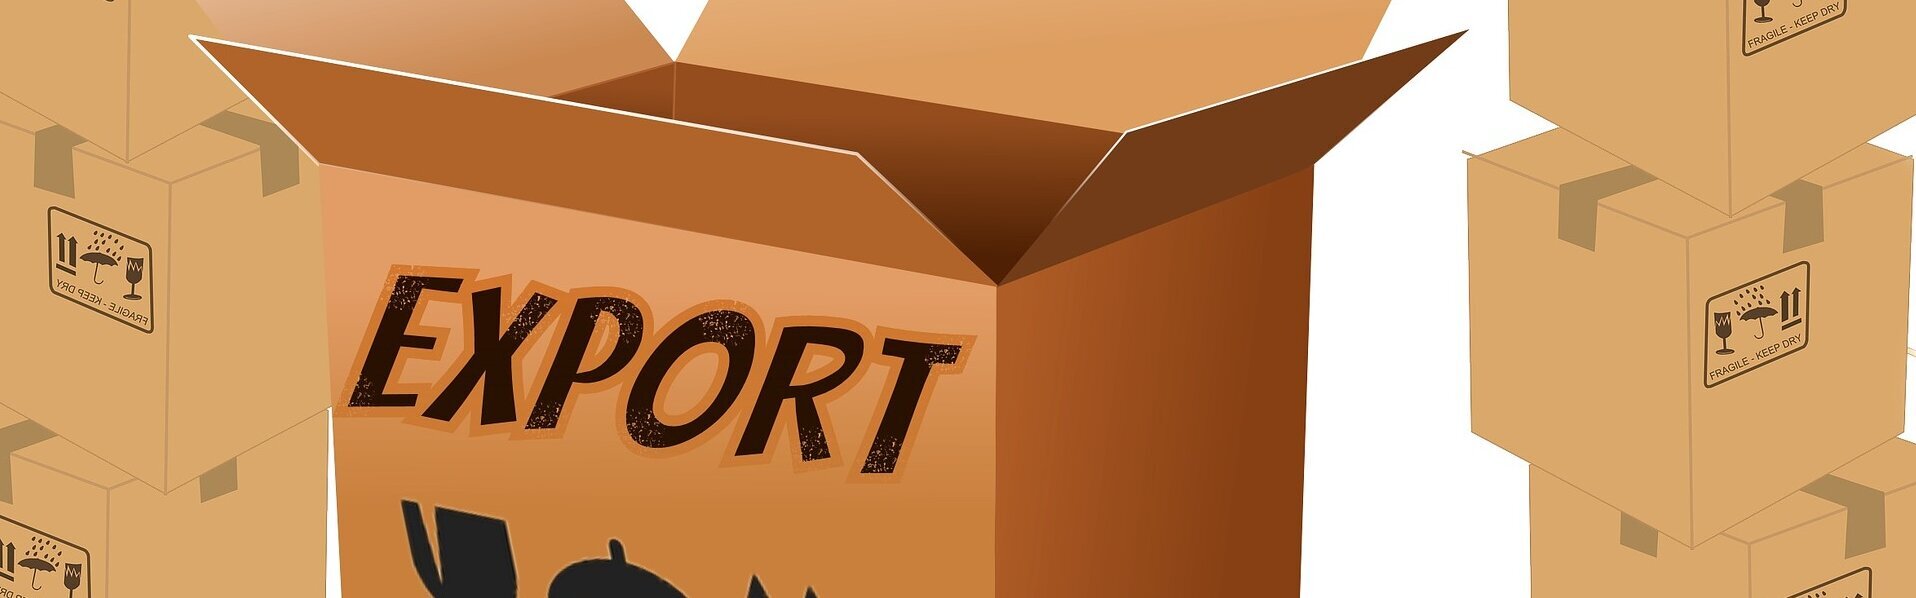 Das Bild zeigt einen Karton mit der Aufschrift "Export".